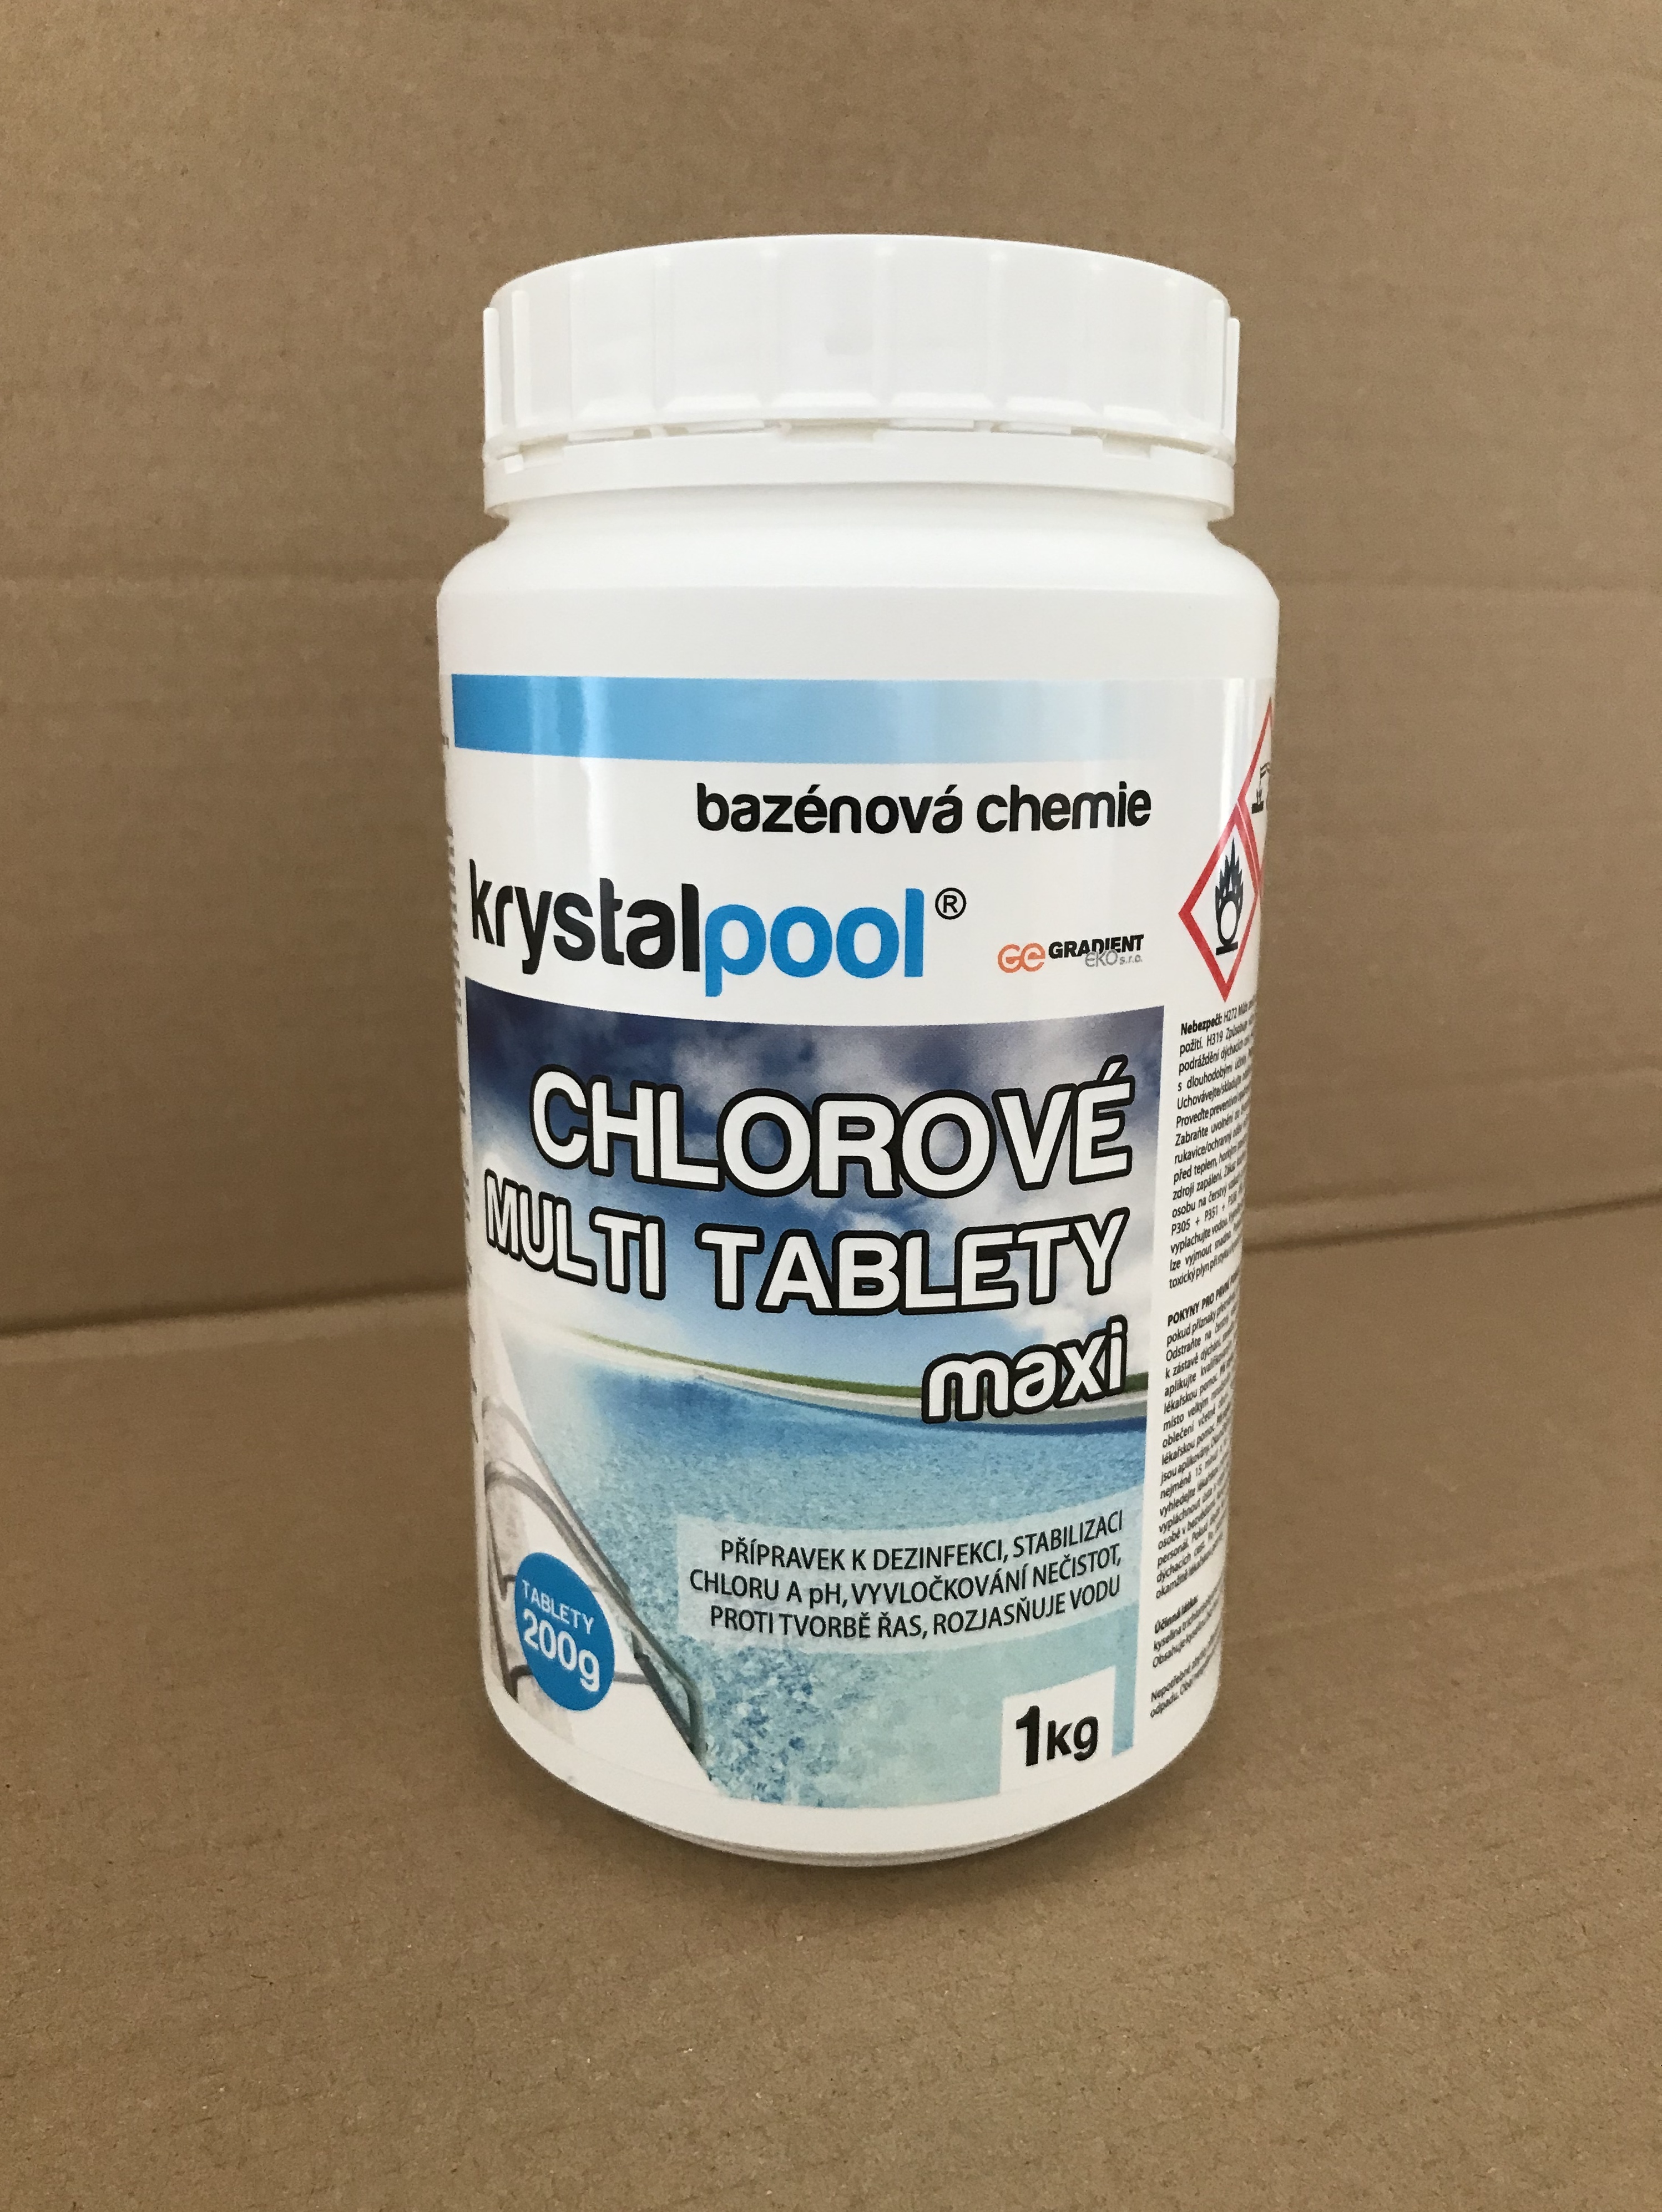 Krystalpool Chlorové multi tablety maxi 1 kg (200g)